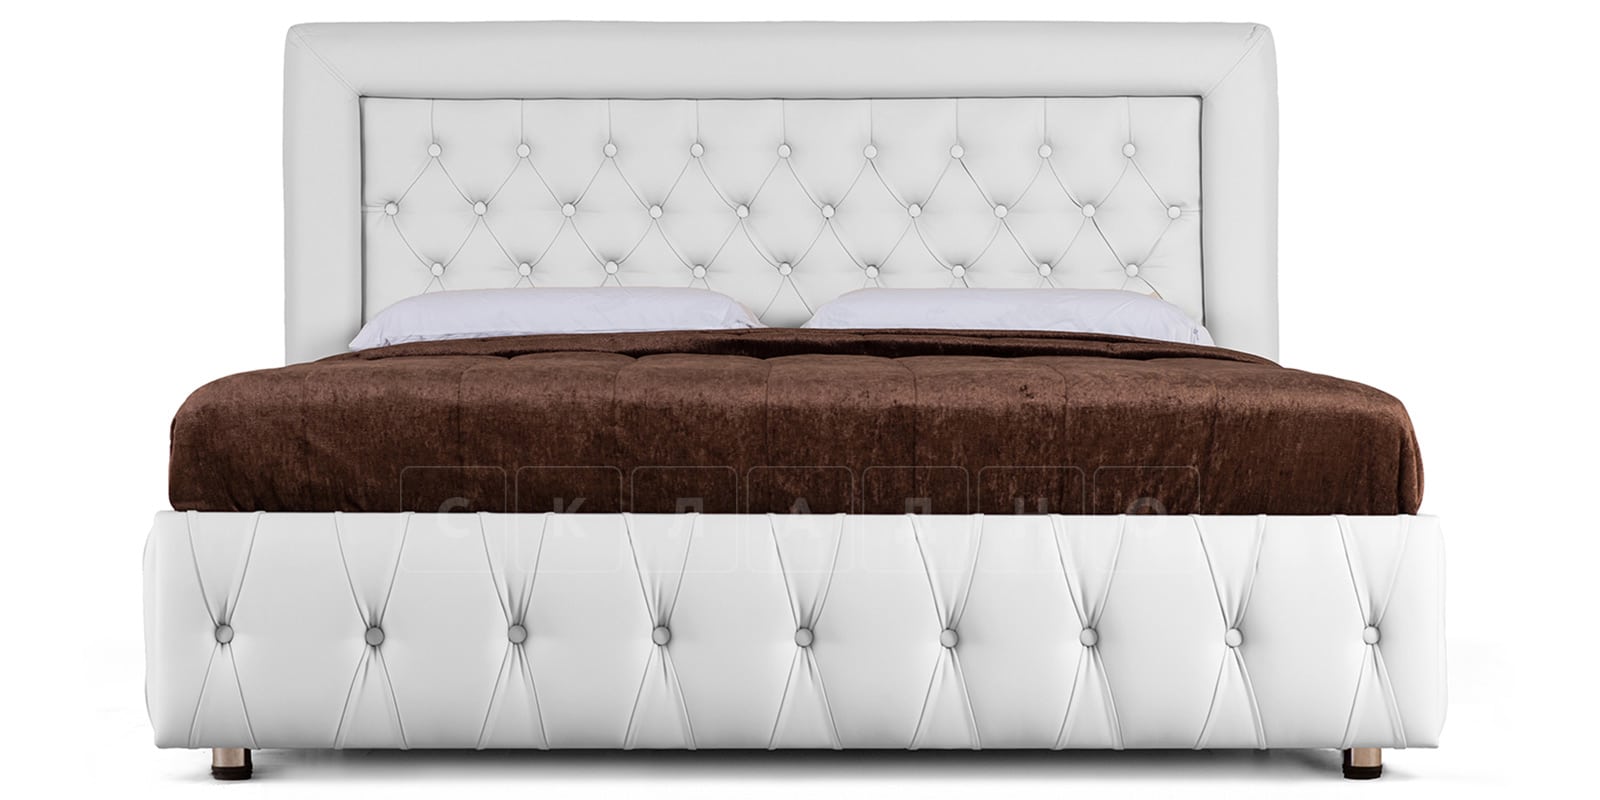 Мягкая кровать Малибу 160см экокожа белого цвета вариант 7-2 фото 2 | интернет-магазин Складно